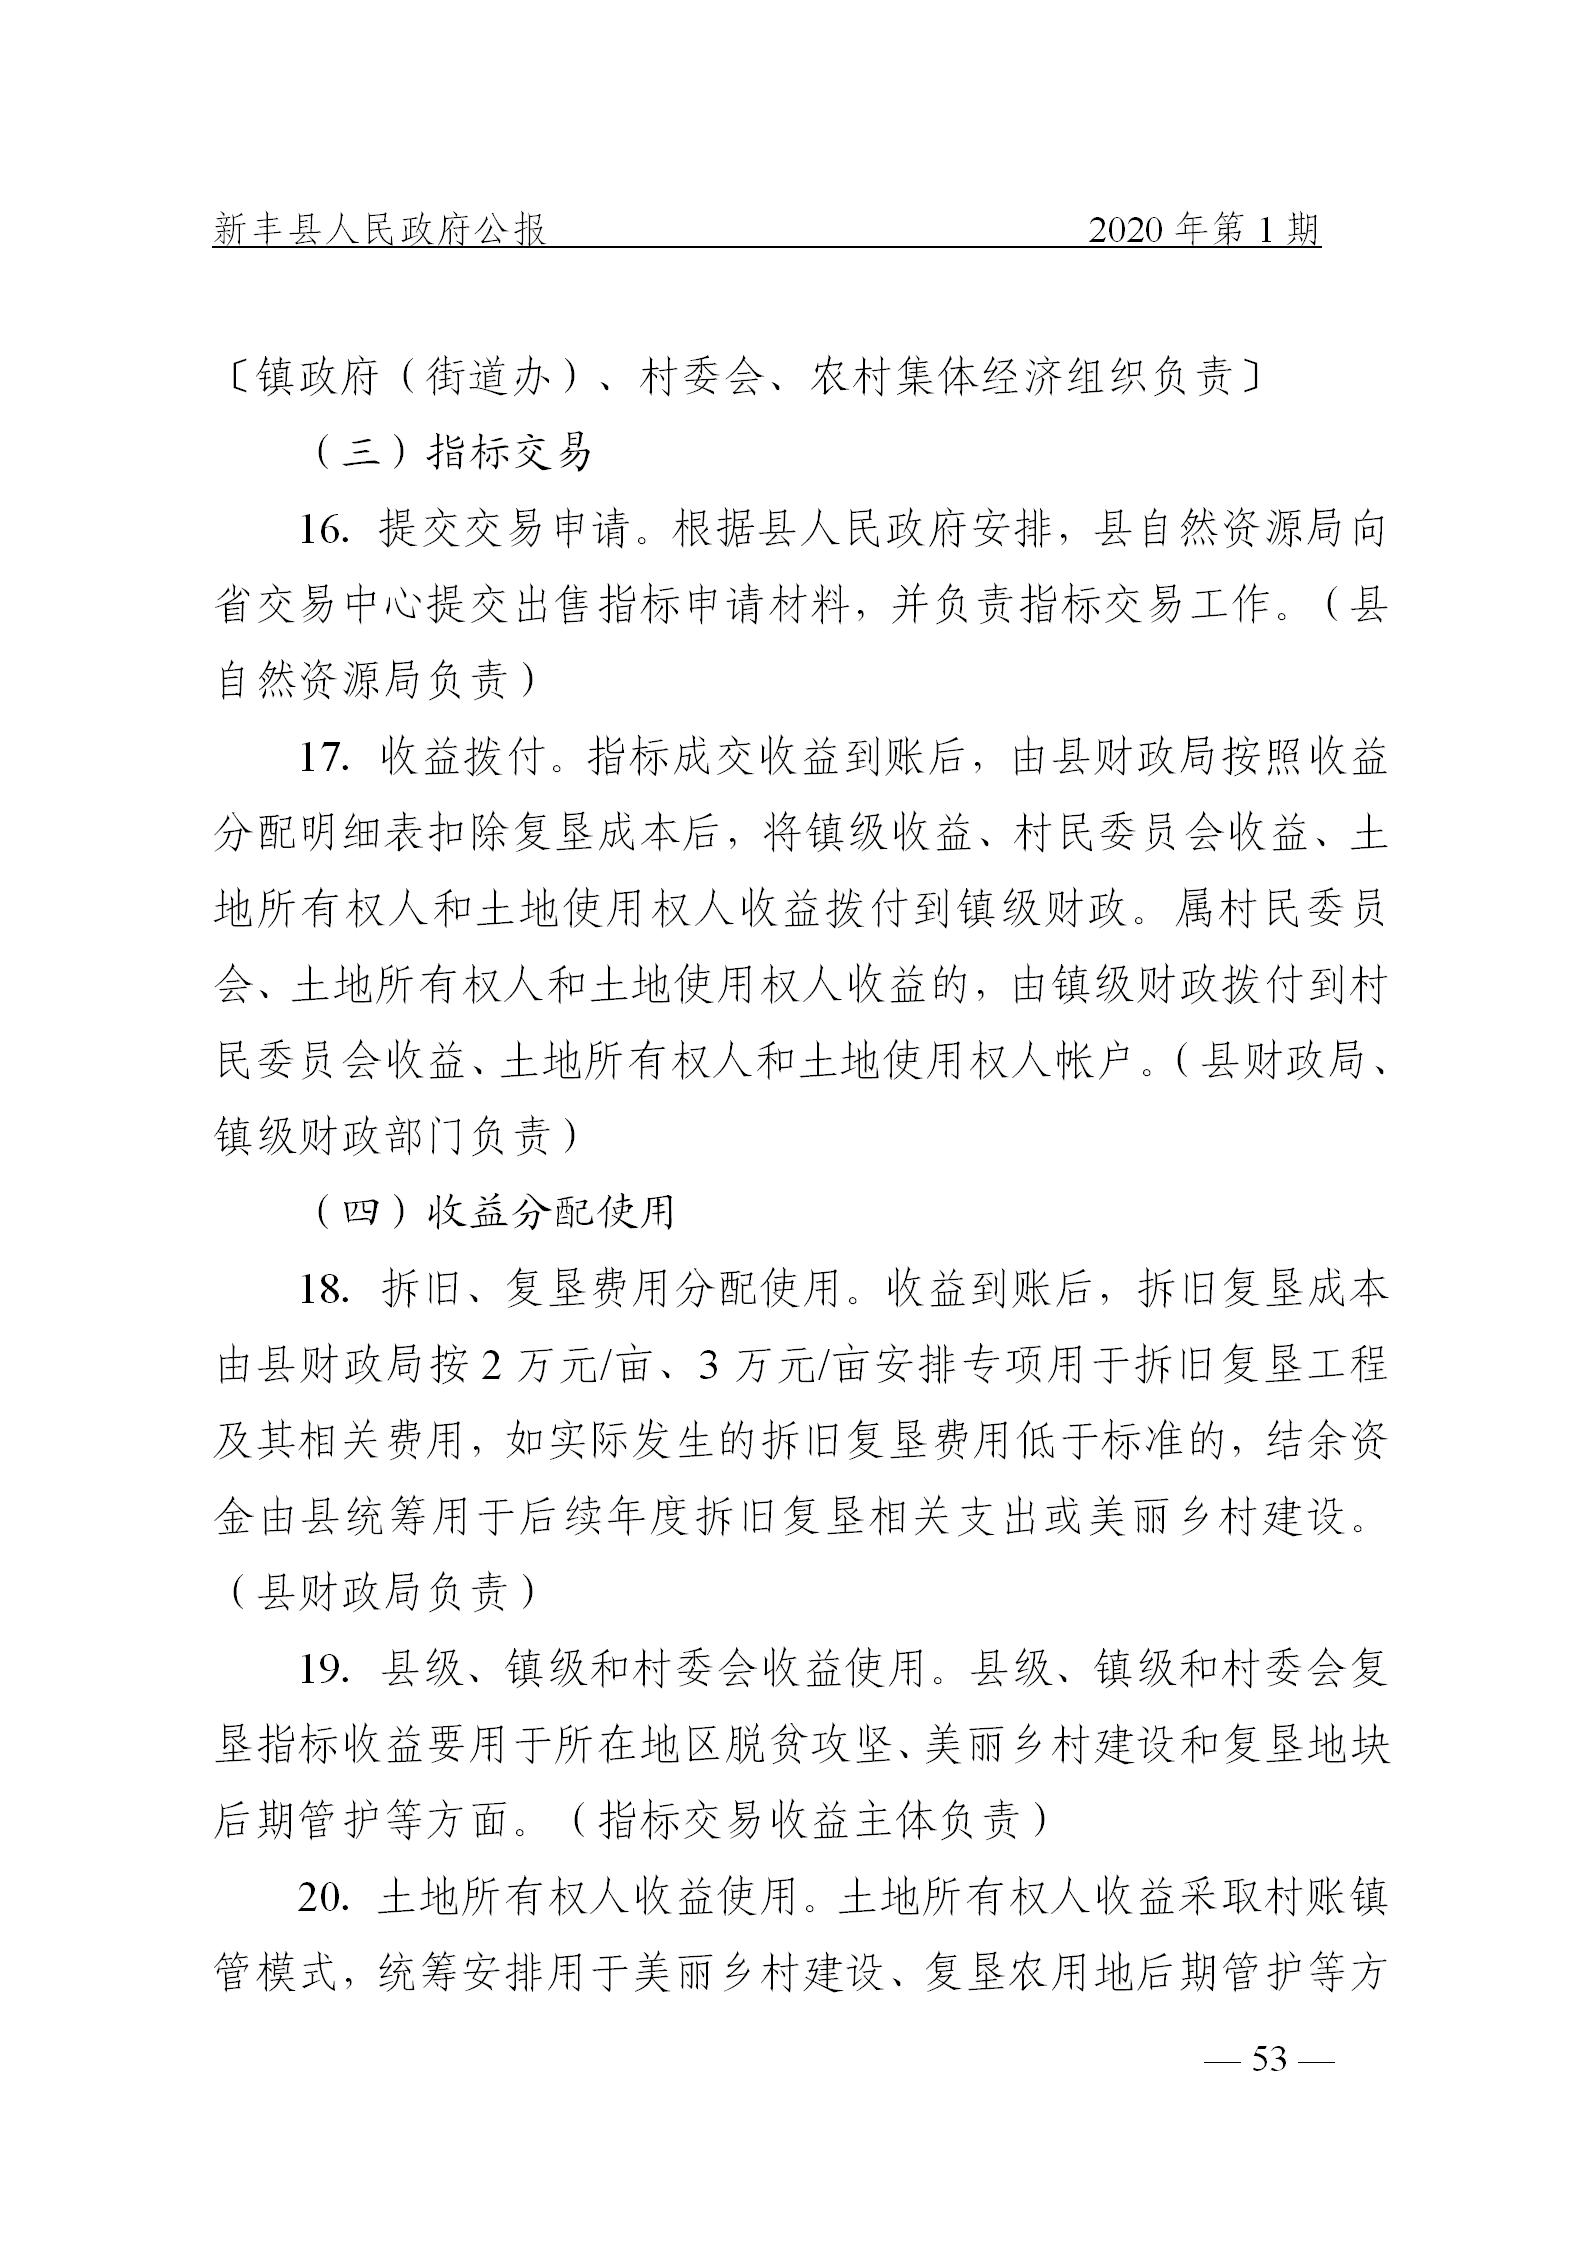 《新丰县人民政府公报》2020年第1期(1)_53.png